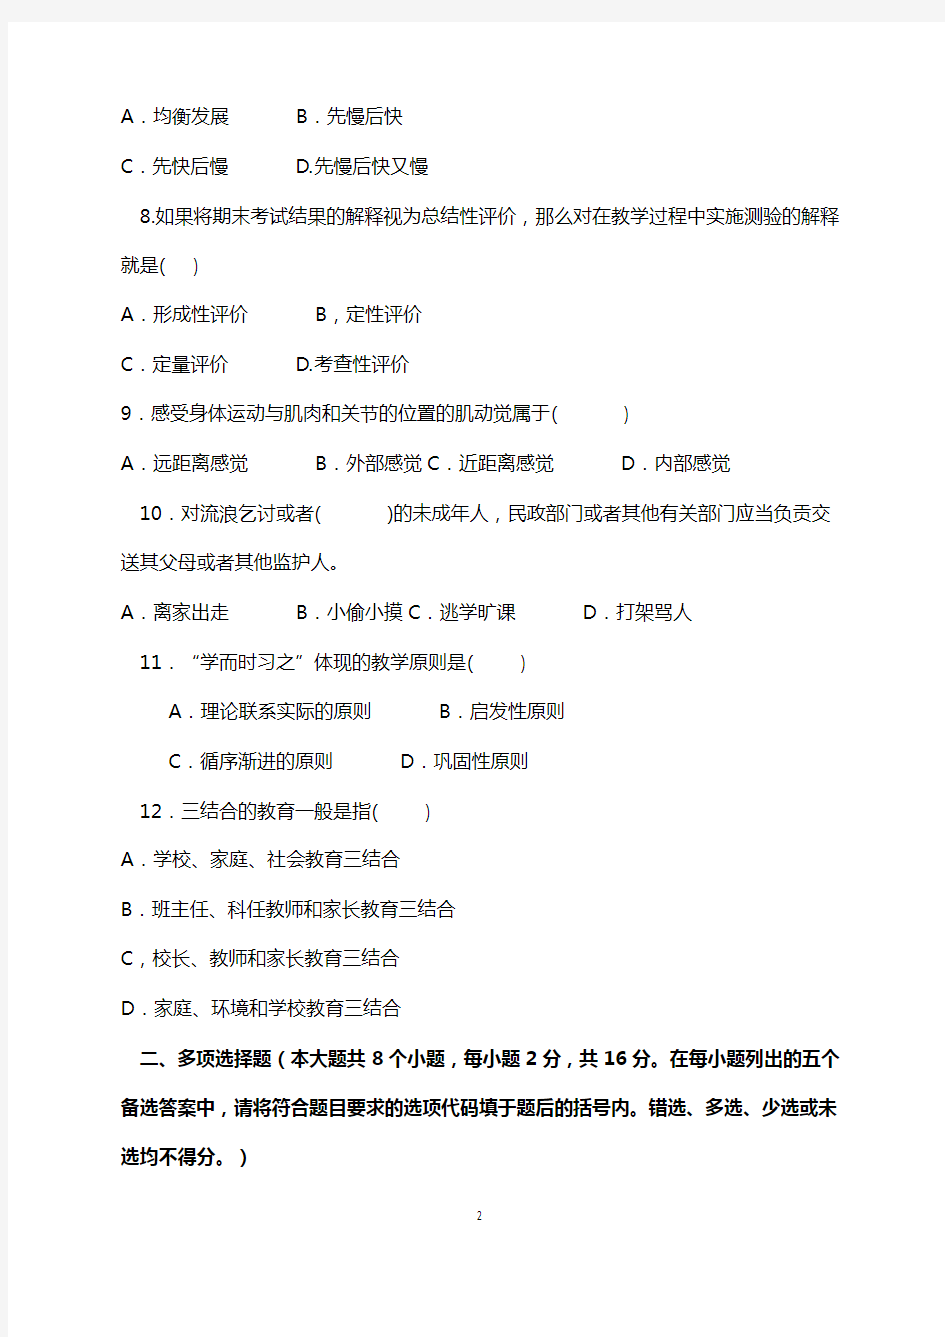 福建省中小学教师晋升中一职称考试试题